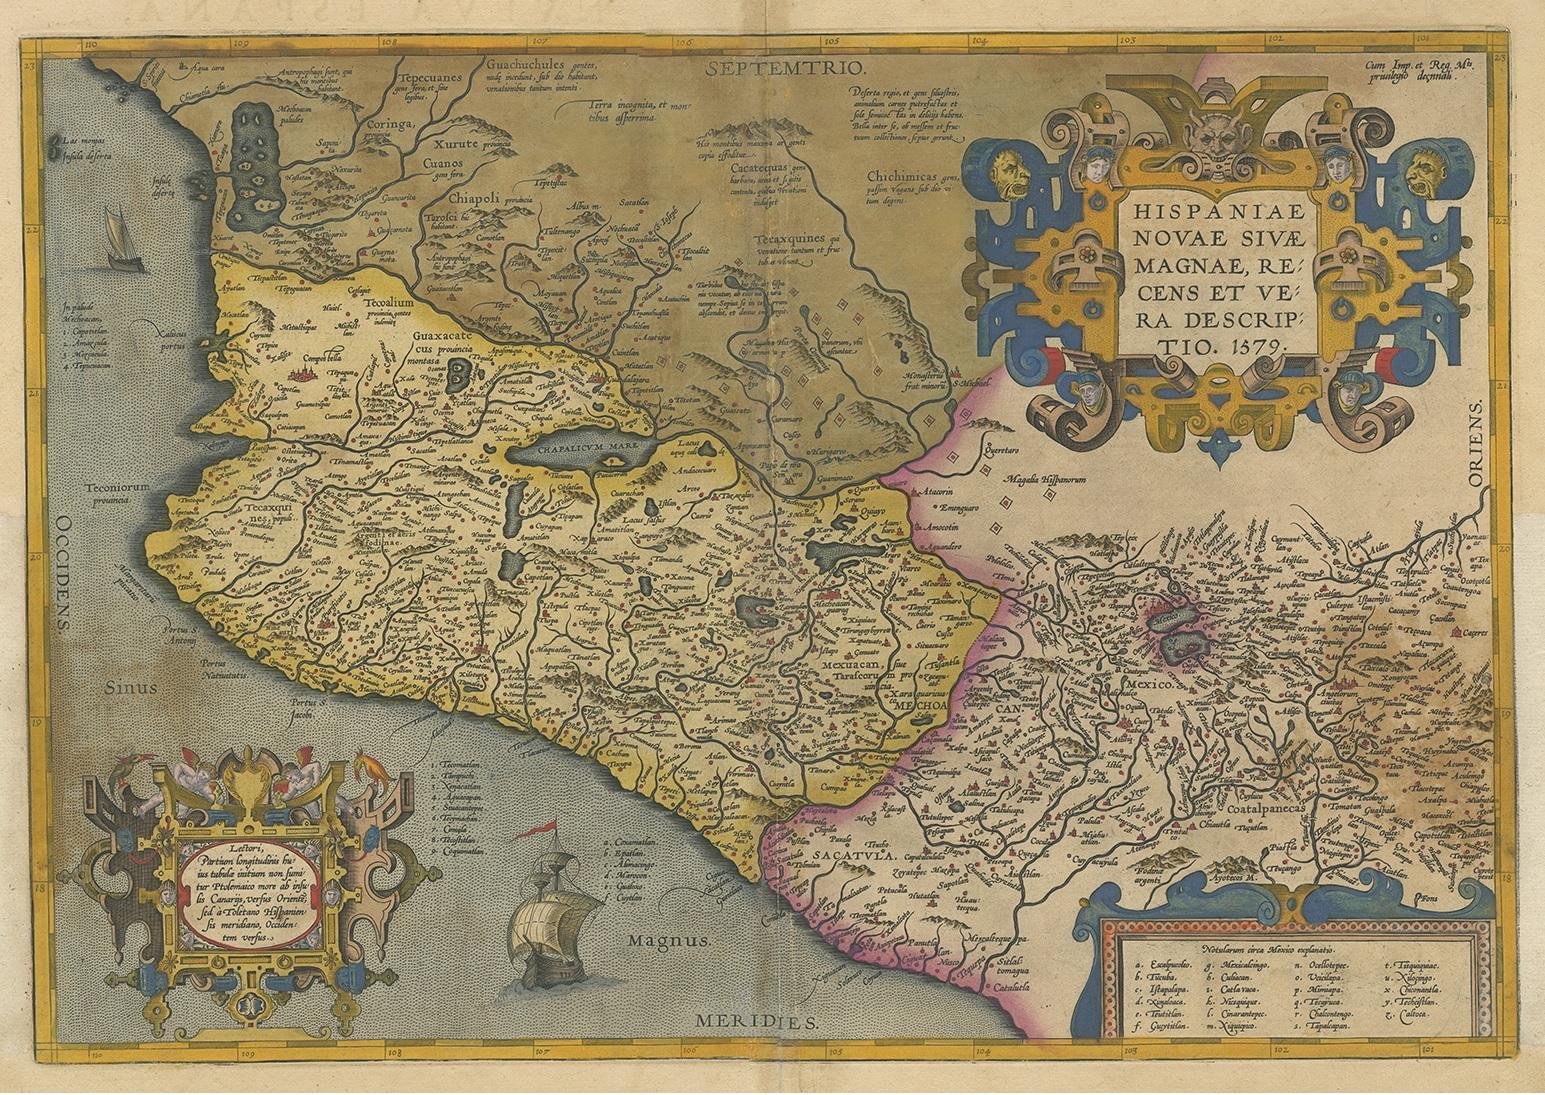 Antike Karte mit dem Titel 'Hispaniae Novae Sivae Magnae Recens Et Vera Descriptio 1579'. Karte des westlichen Neuspaniens mit den kürzlich gegründeten spanischen Siedlungen, vielen Flüssen und großen Seen, darunter der Chapala-See und ein